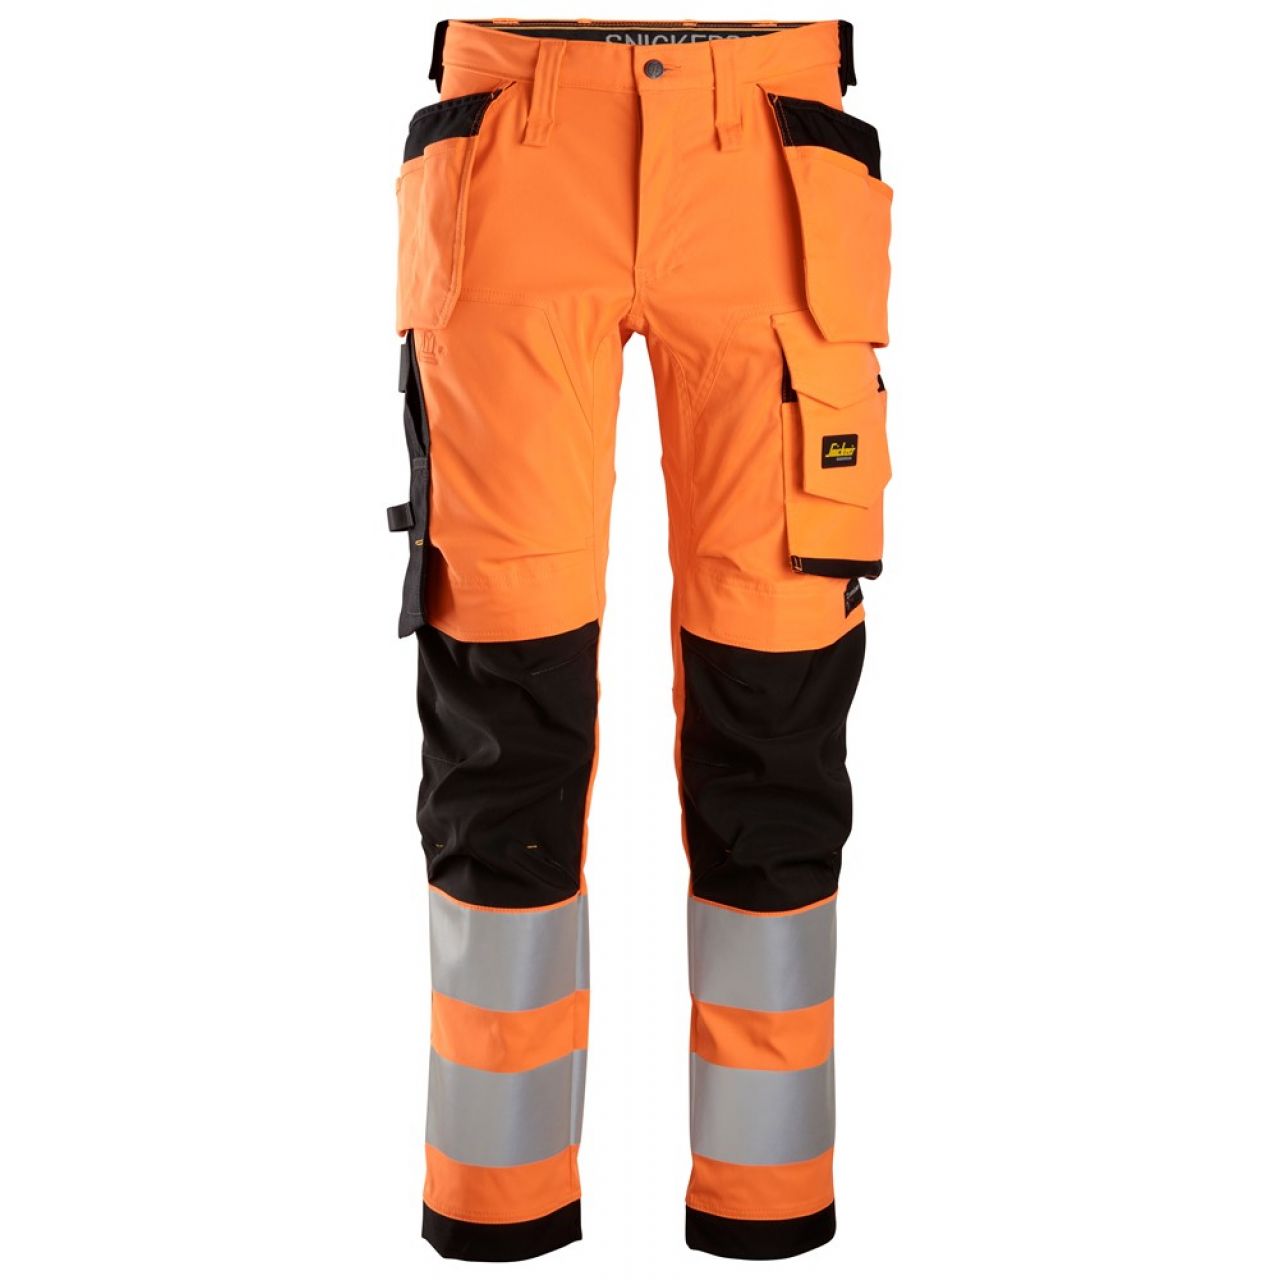 6243 Pantalones largos de trabajo elásticos de alta visibilidad clase 2 con bolsillos flotantes naranja-negro talla 156